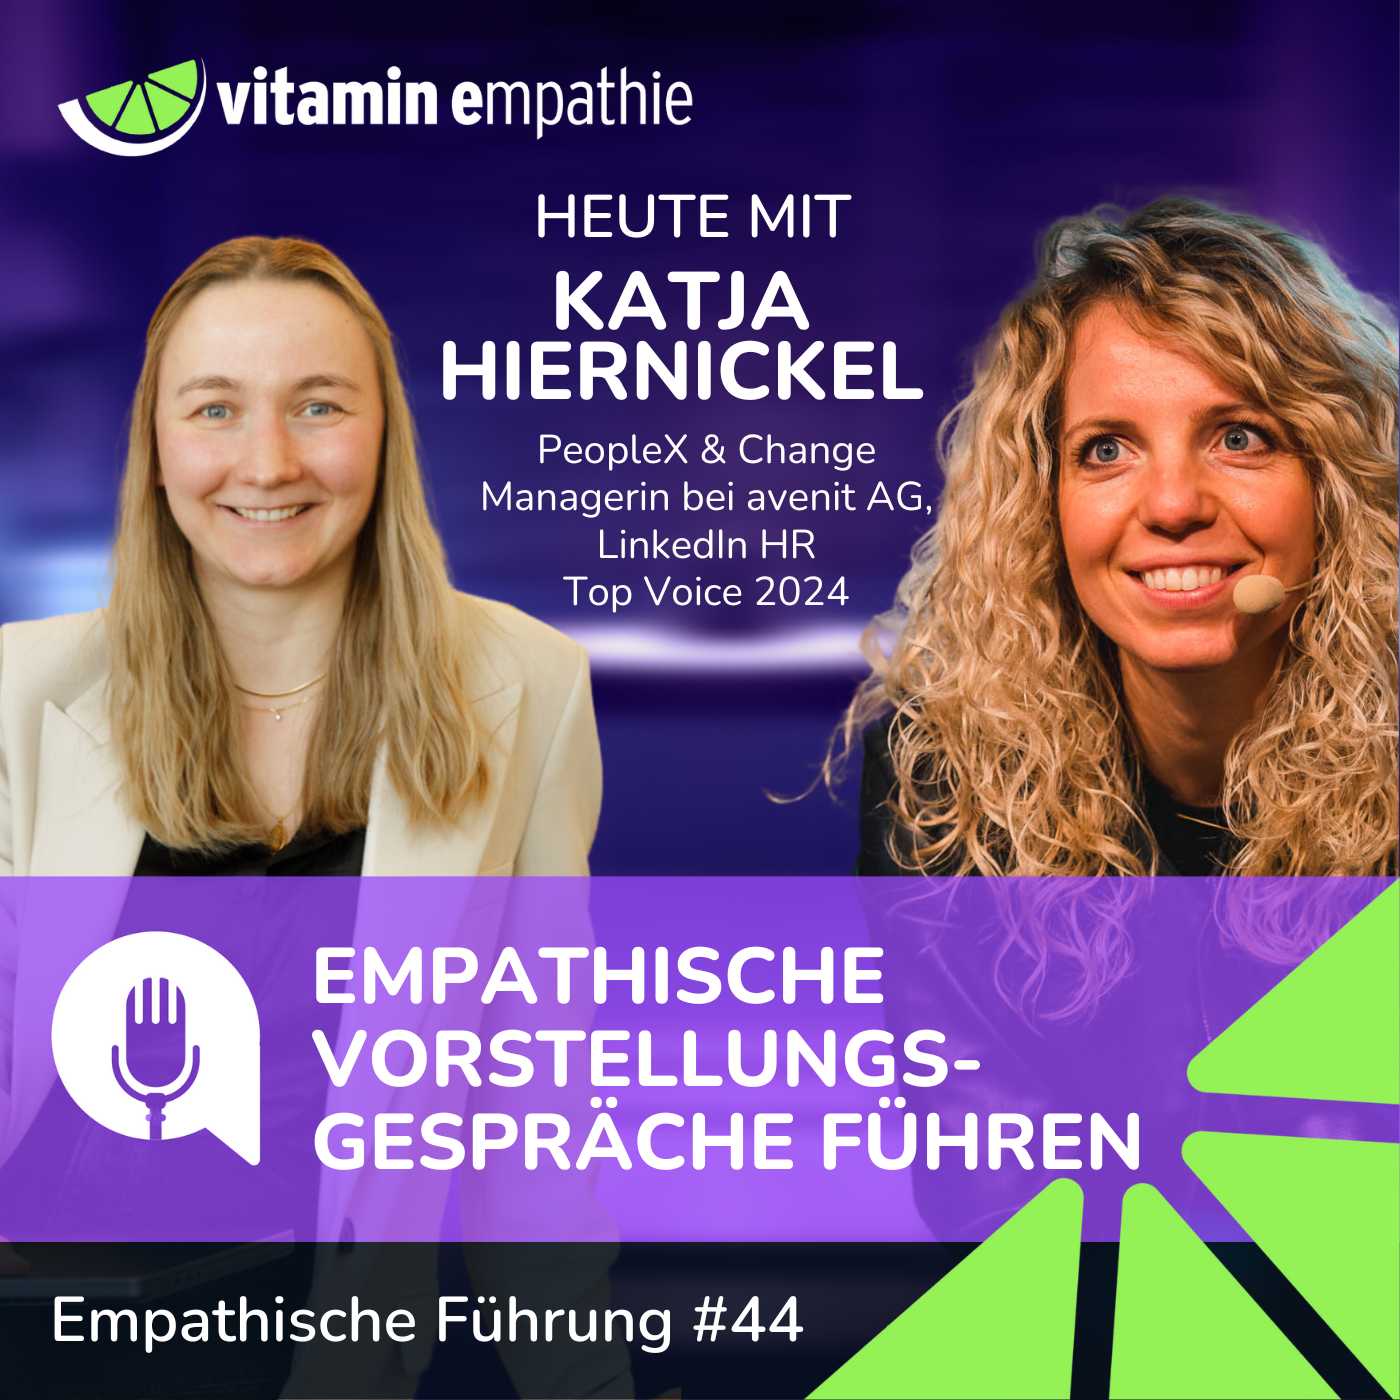 #044 - Empathische Vorstellungsgespräche führen | Mit Katja Hiernickel